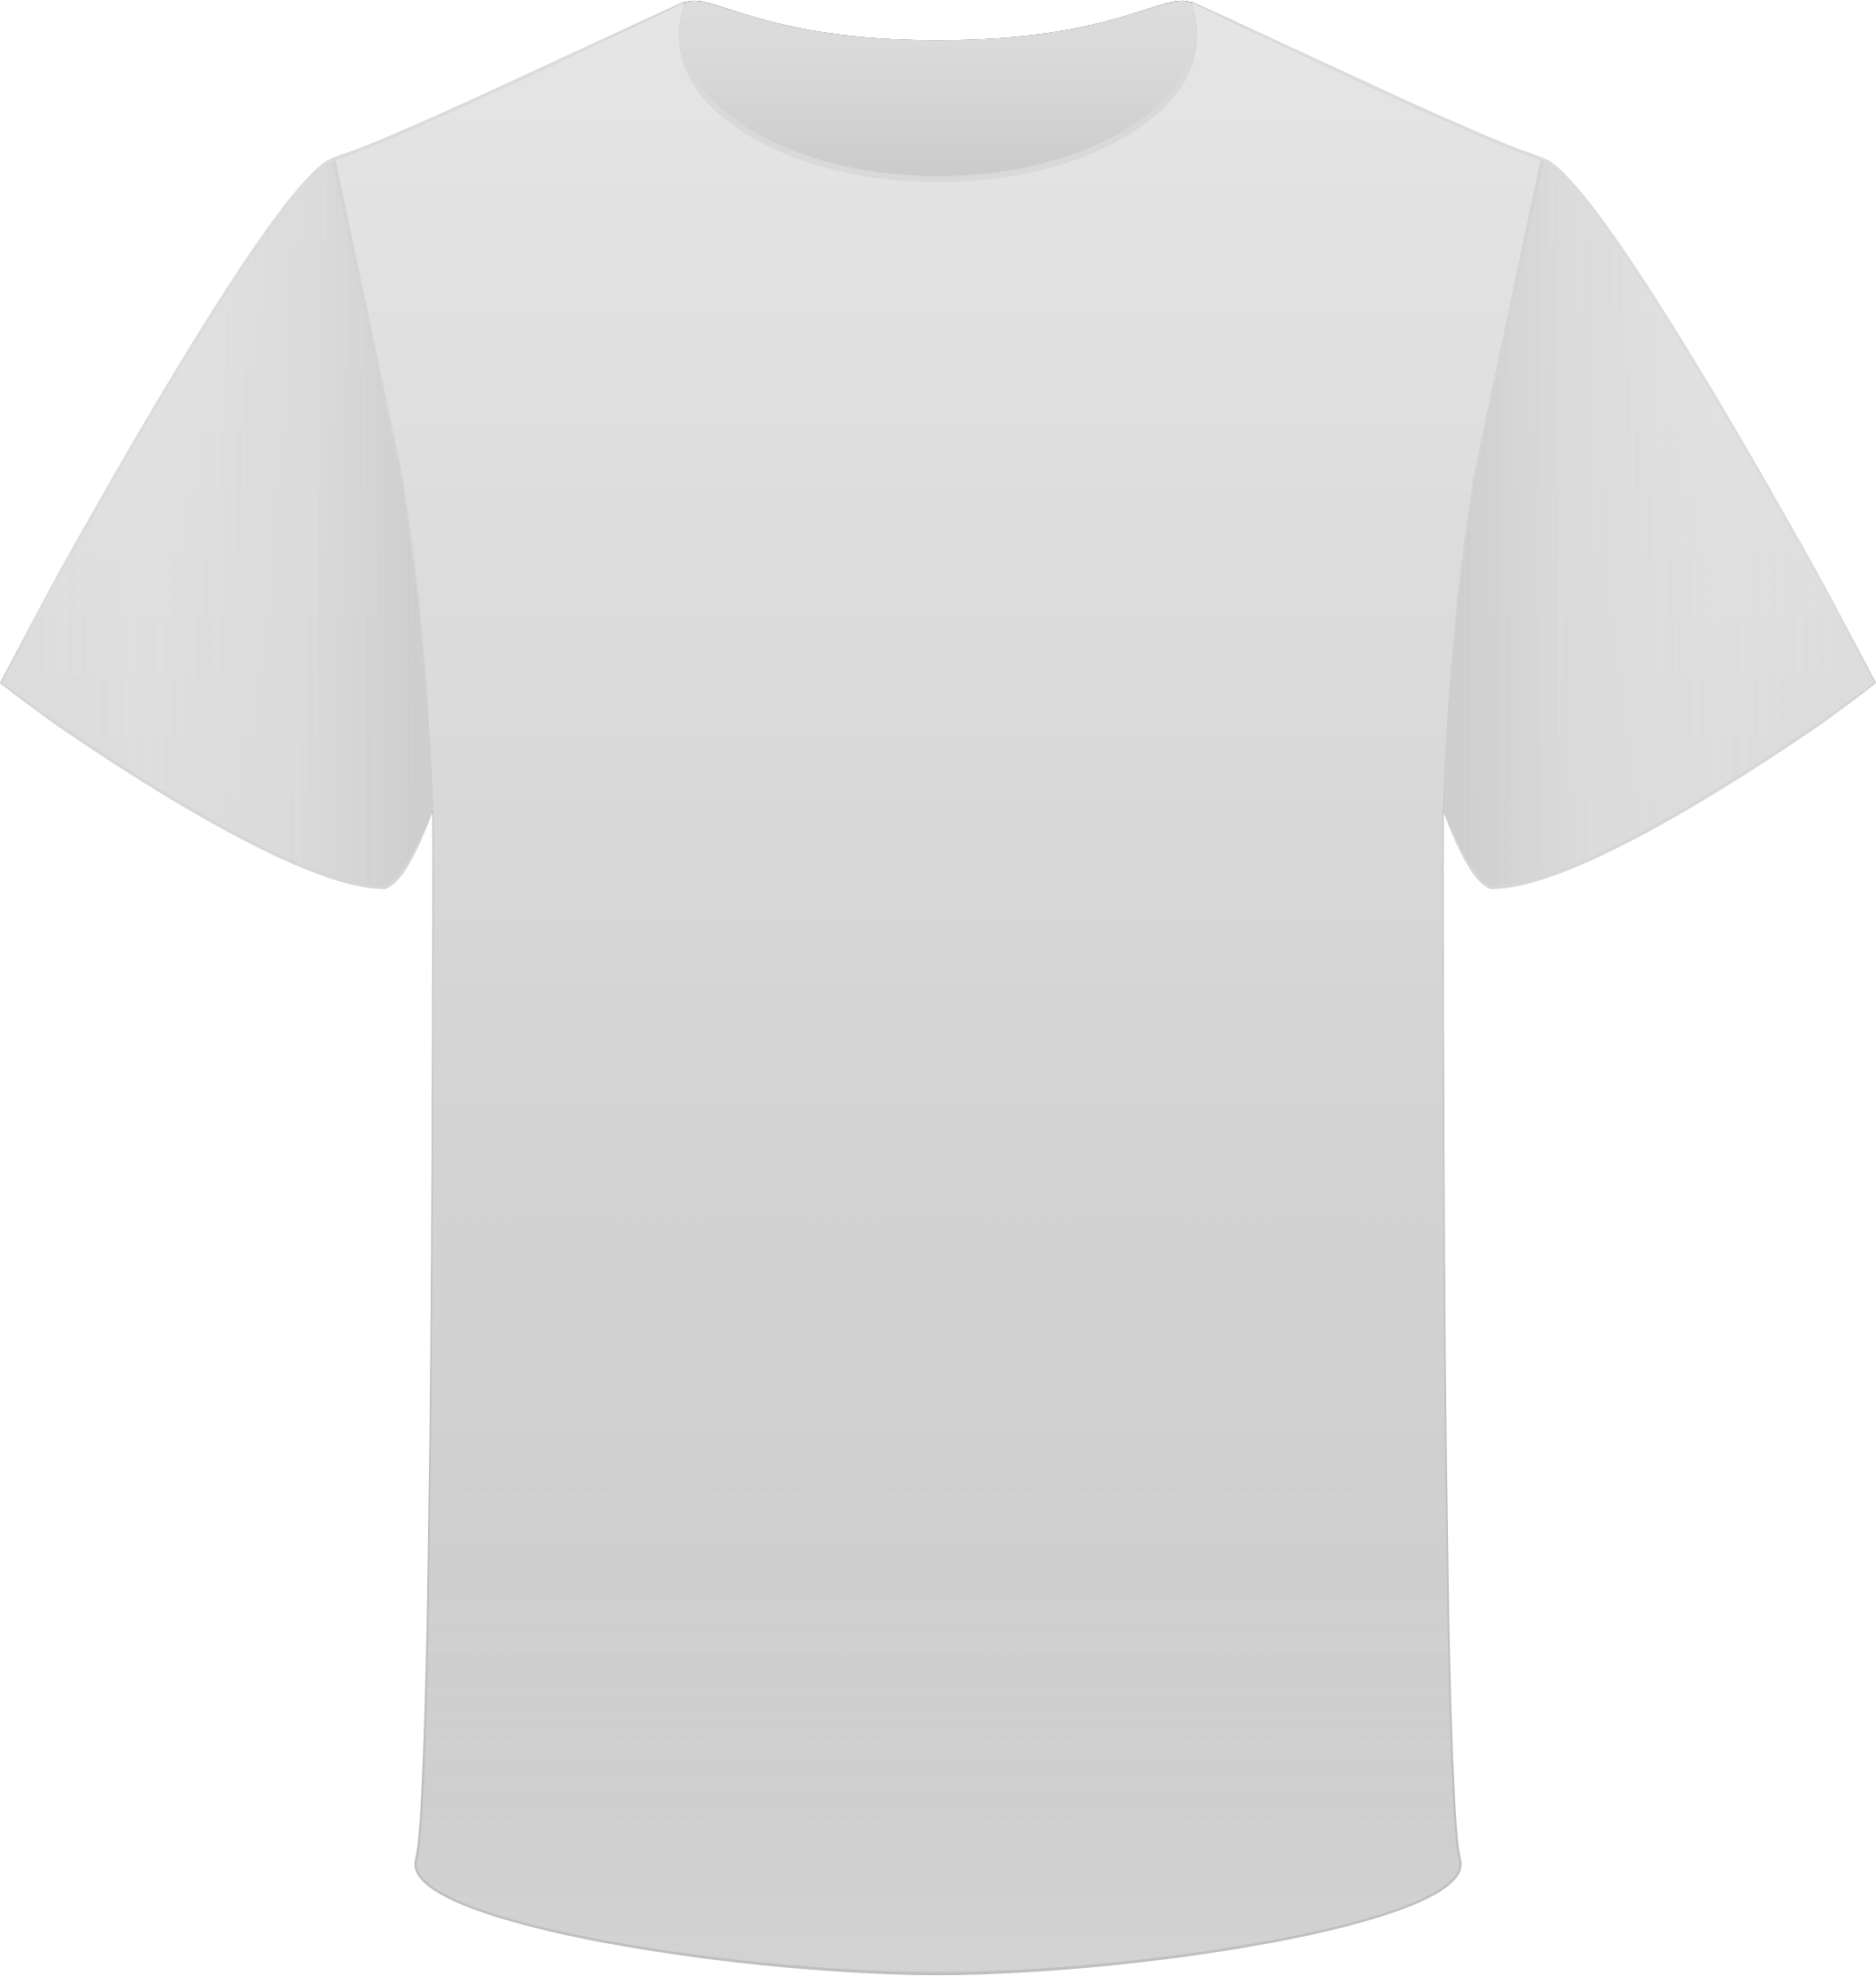 Tshirt Grey Back transparent PNG - StickPNG